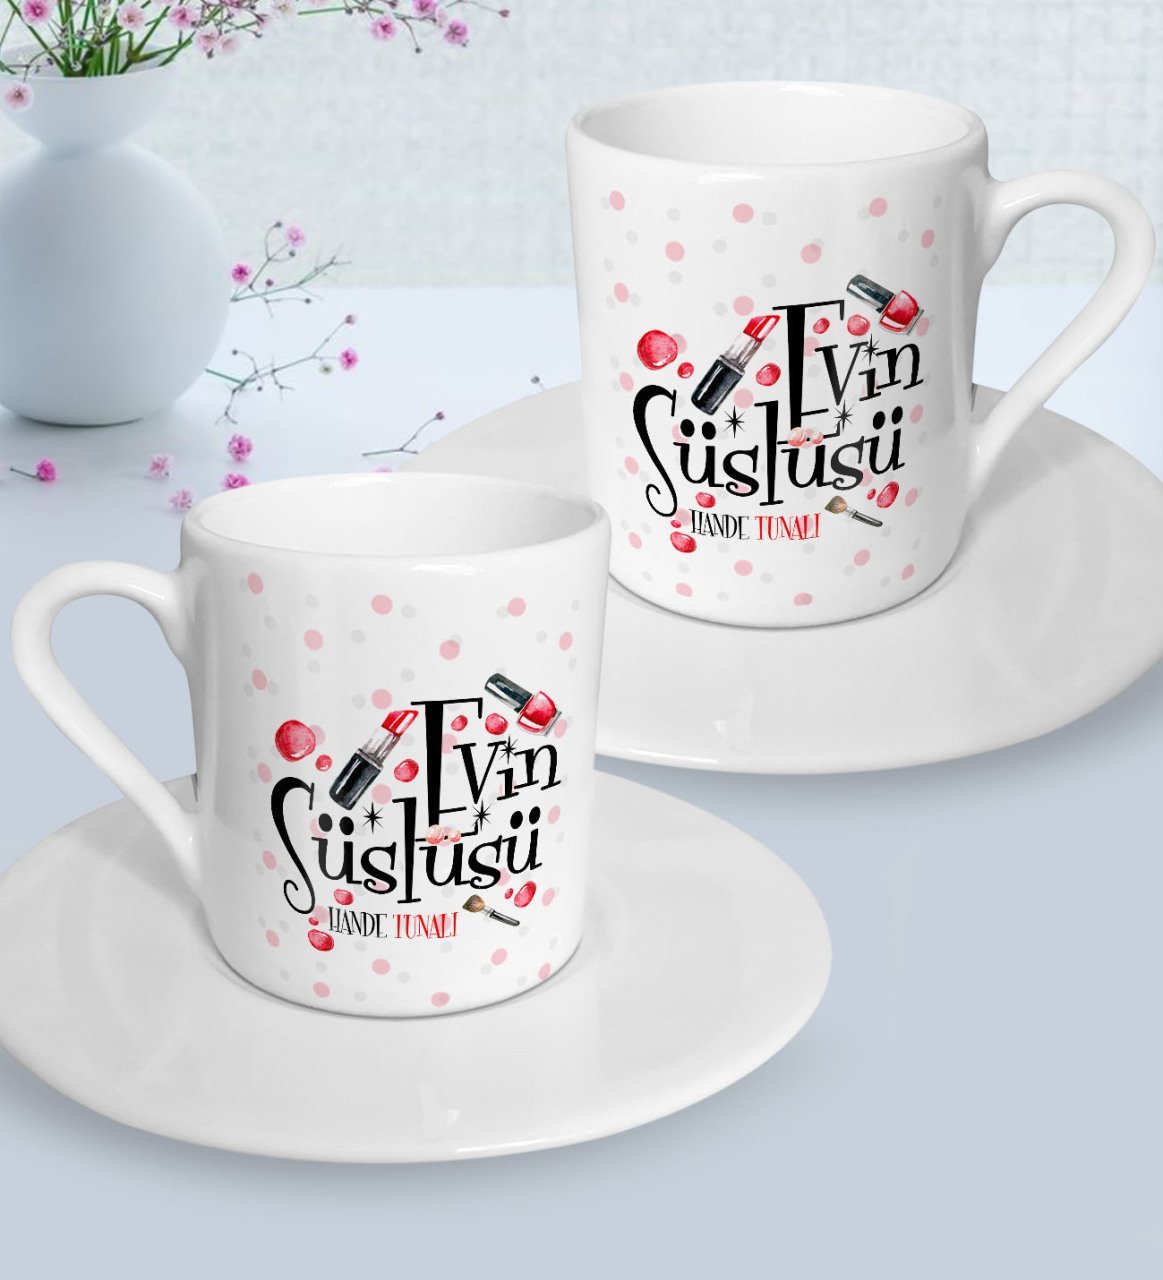 Kişiye Özel Anneler Günü Temalı Evin Süslüsü Tasarımlı İkili Türk Kahvesi Fincanı Seti-4